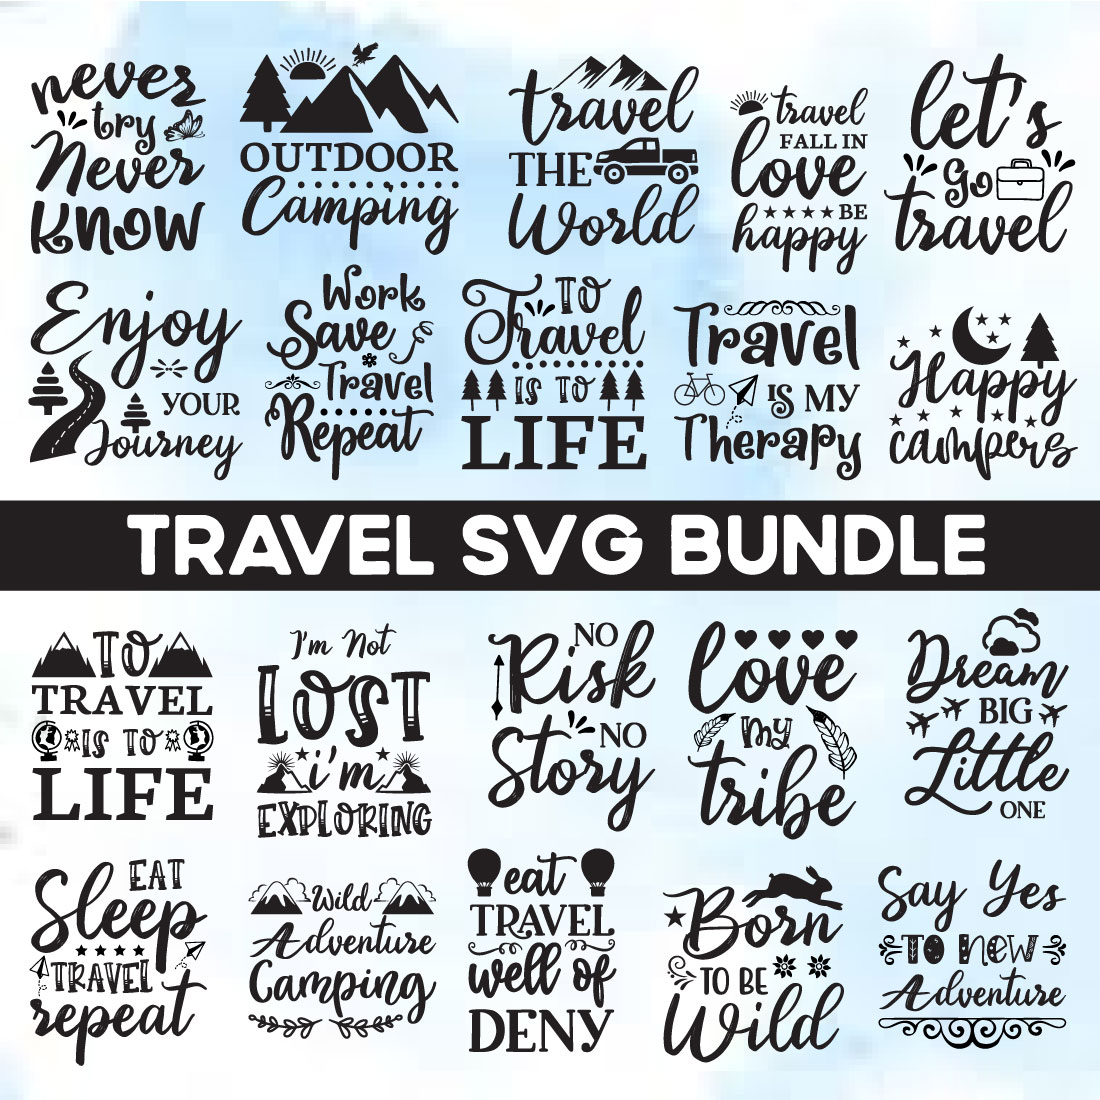 Travel Svg Bundle cover image.